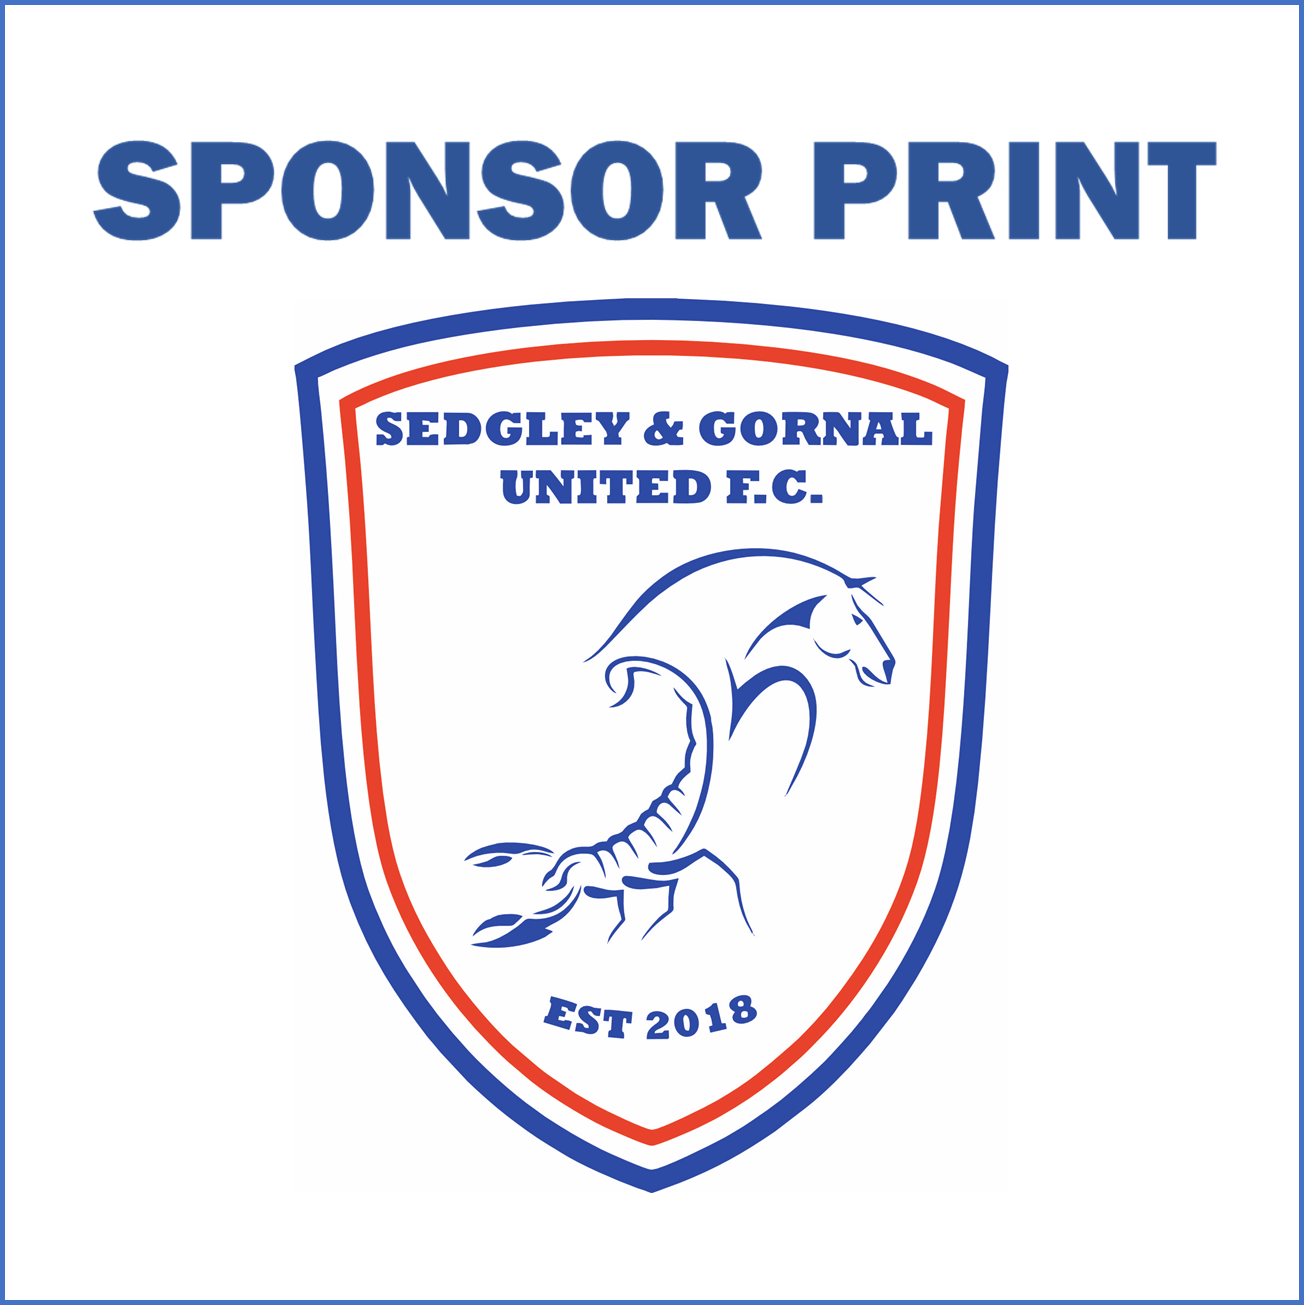 Sponsor Print for Sedgley & Gornal United